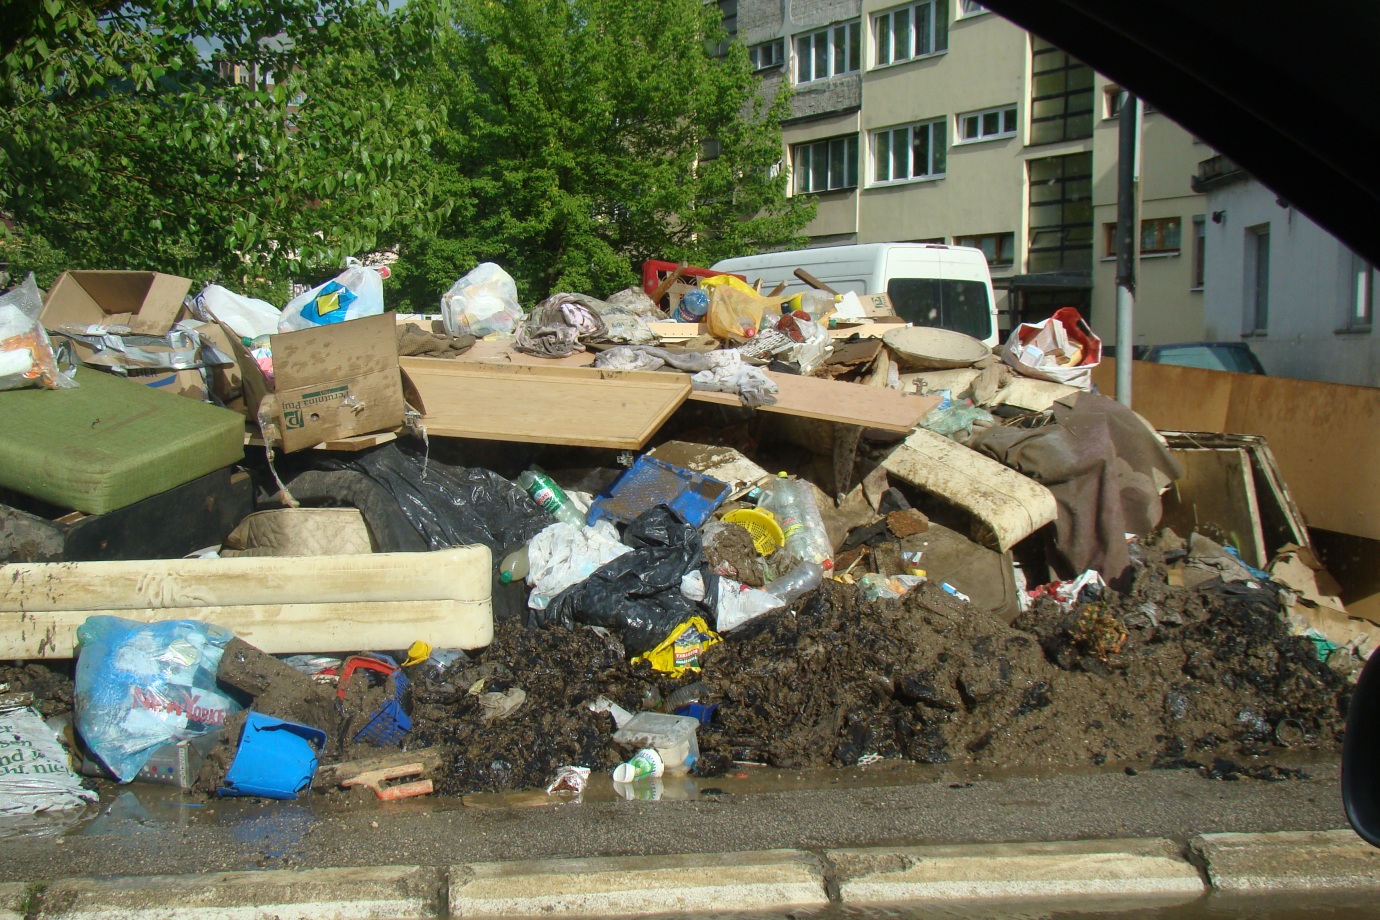 Debris pilled in the streets of Maglaj, Bosnia and Herzegovina